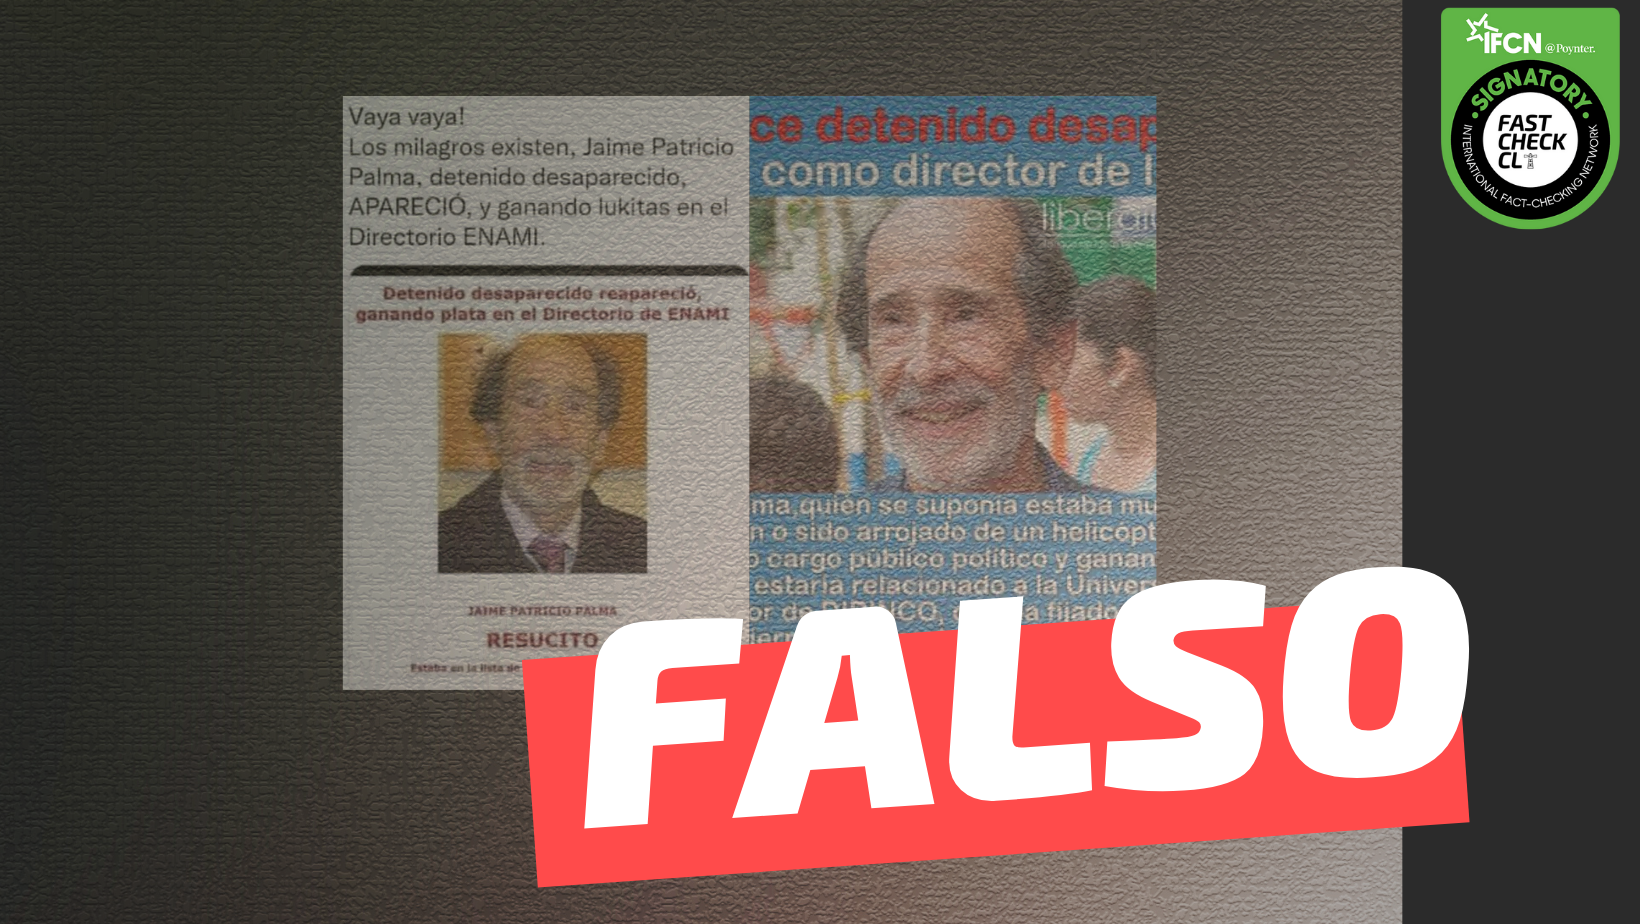 You are currently viewing “Jaime Patricio Palma, detenido desaparecido, apareci贸 como director de la ENAMI”: #Falso